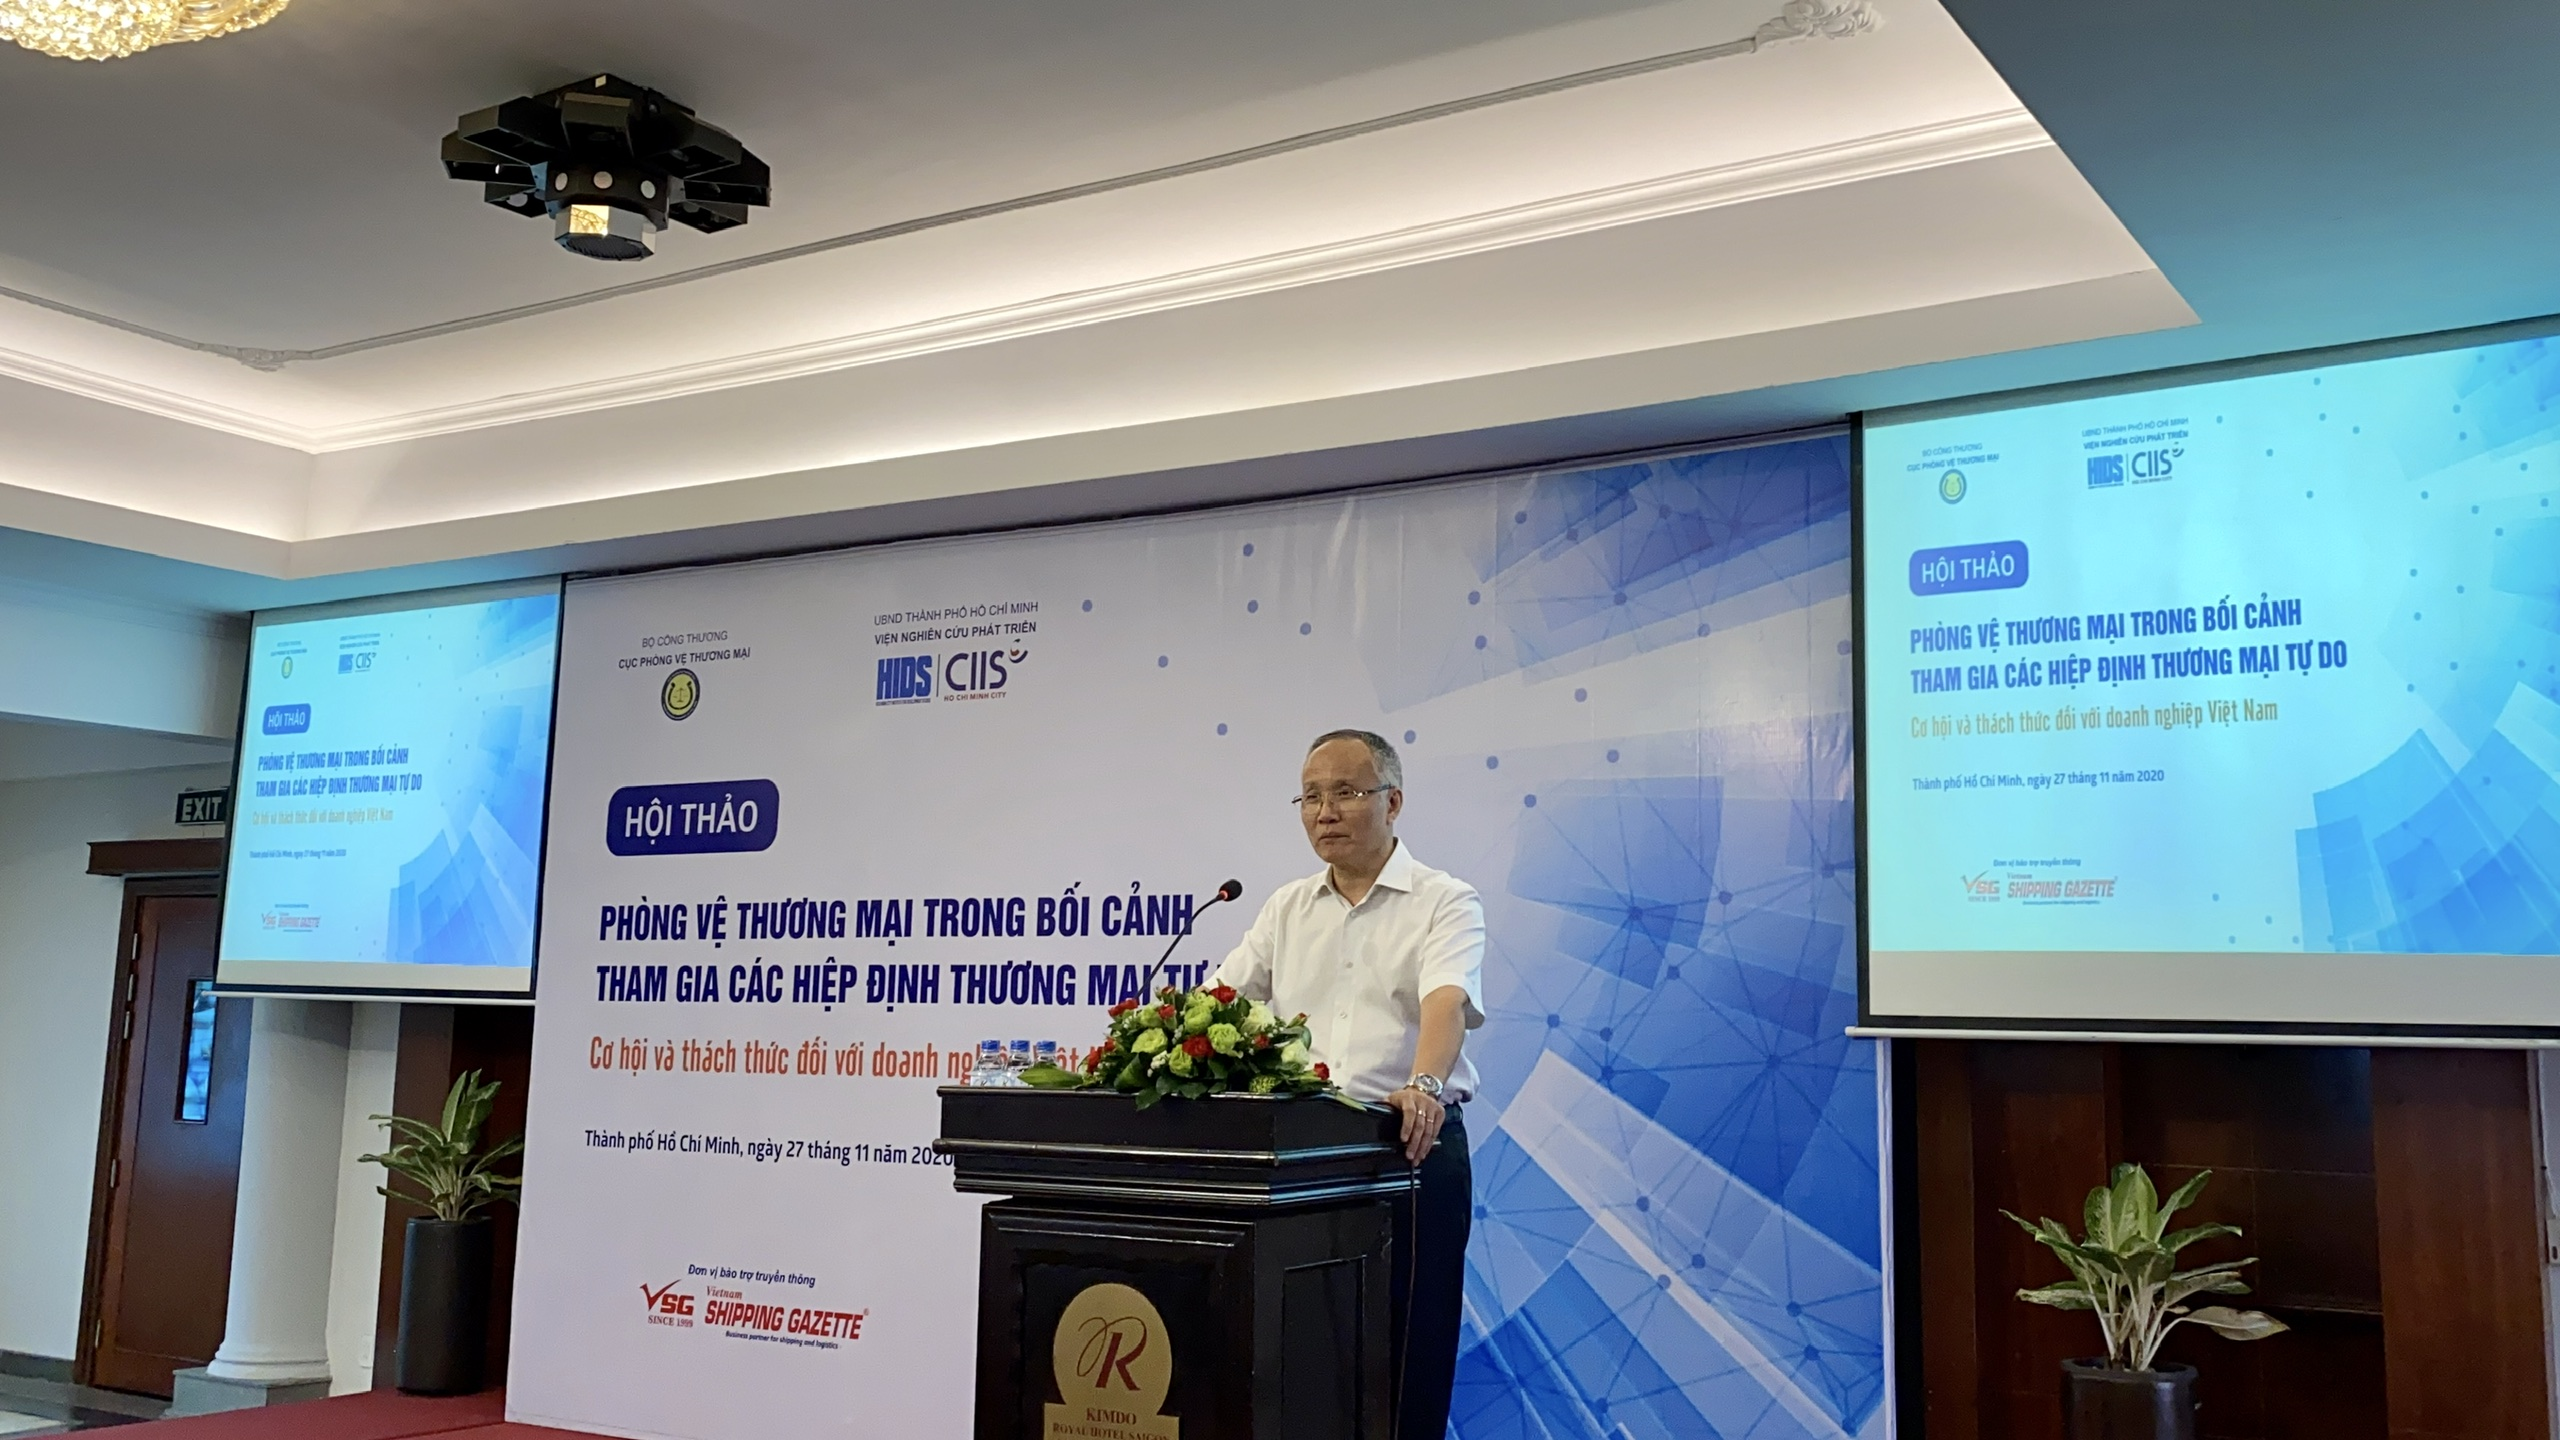 Hội thảo “Phòng vệ thương mại trong bối cảnh tham gia các hiệp định thương mại tự do: Cơ hội và thách thức đối với doanh nghiệp Việt Nam”